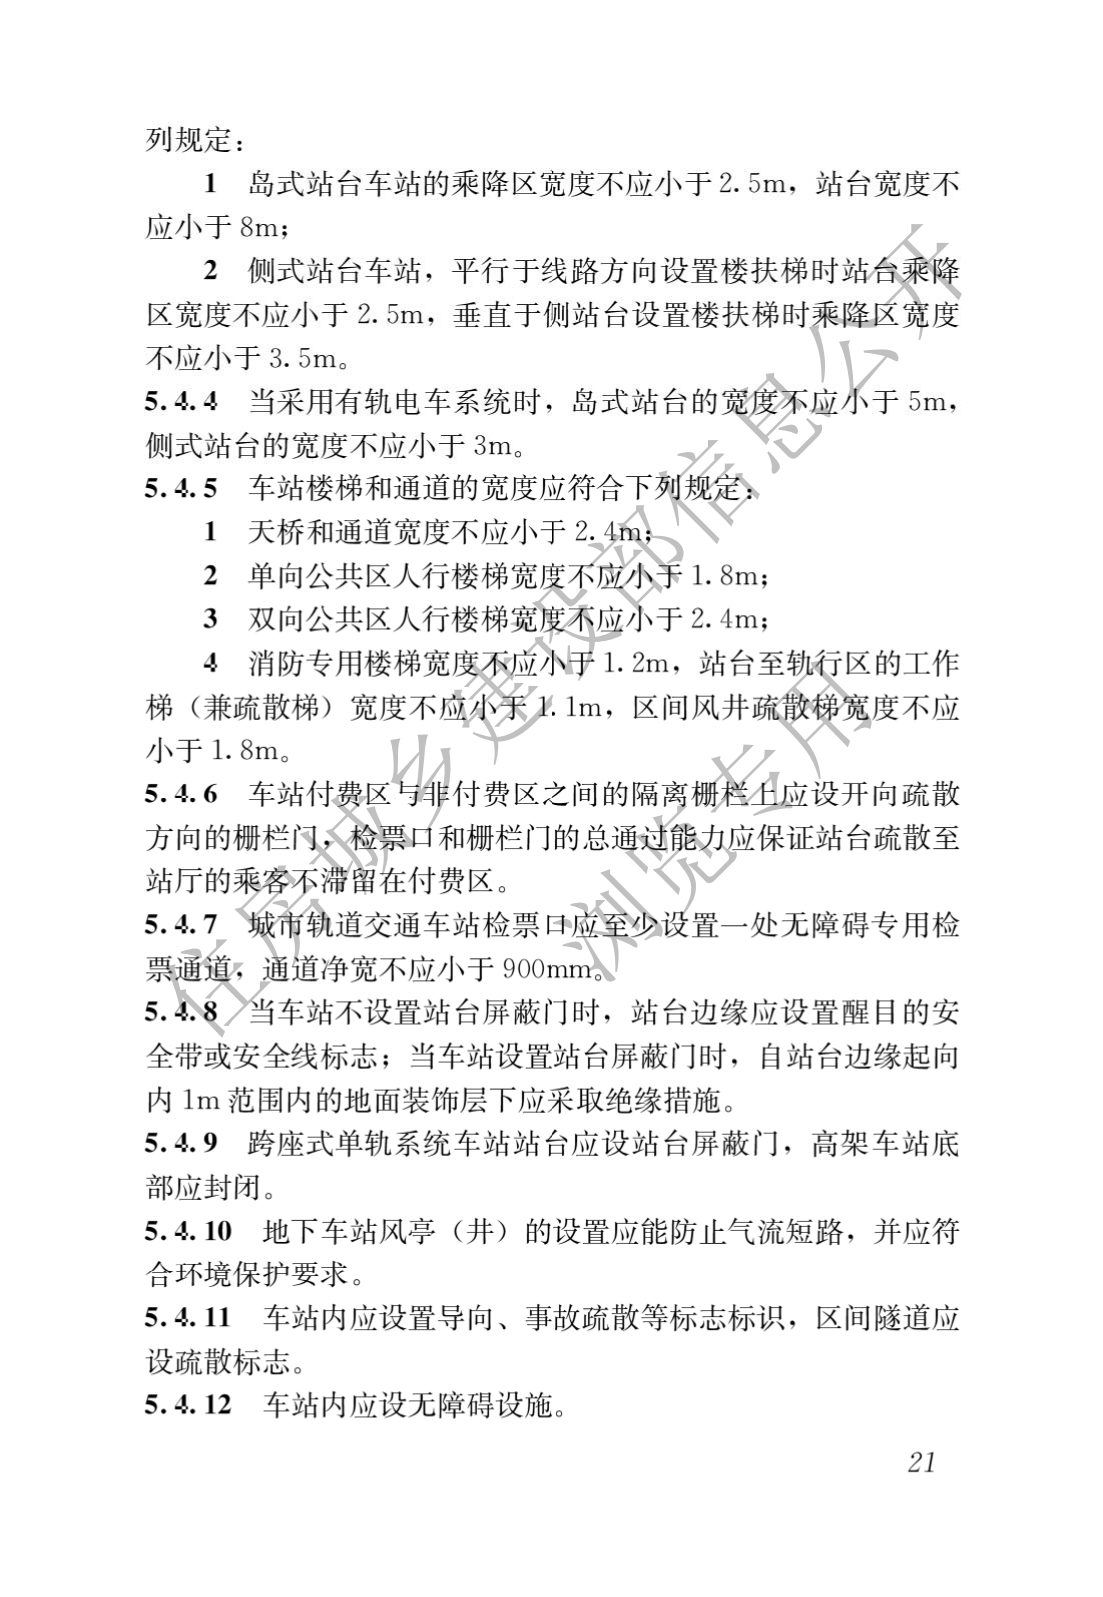 住房和城鄉建設部關于發布國家标準 《城市軌道交通工(gōng)程項目規範》的公告(圖25)